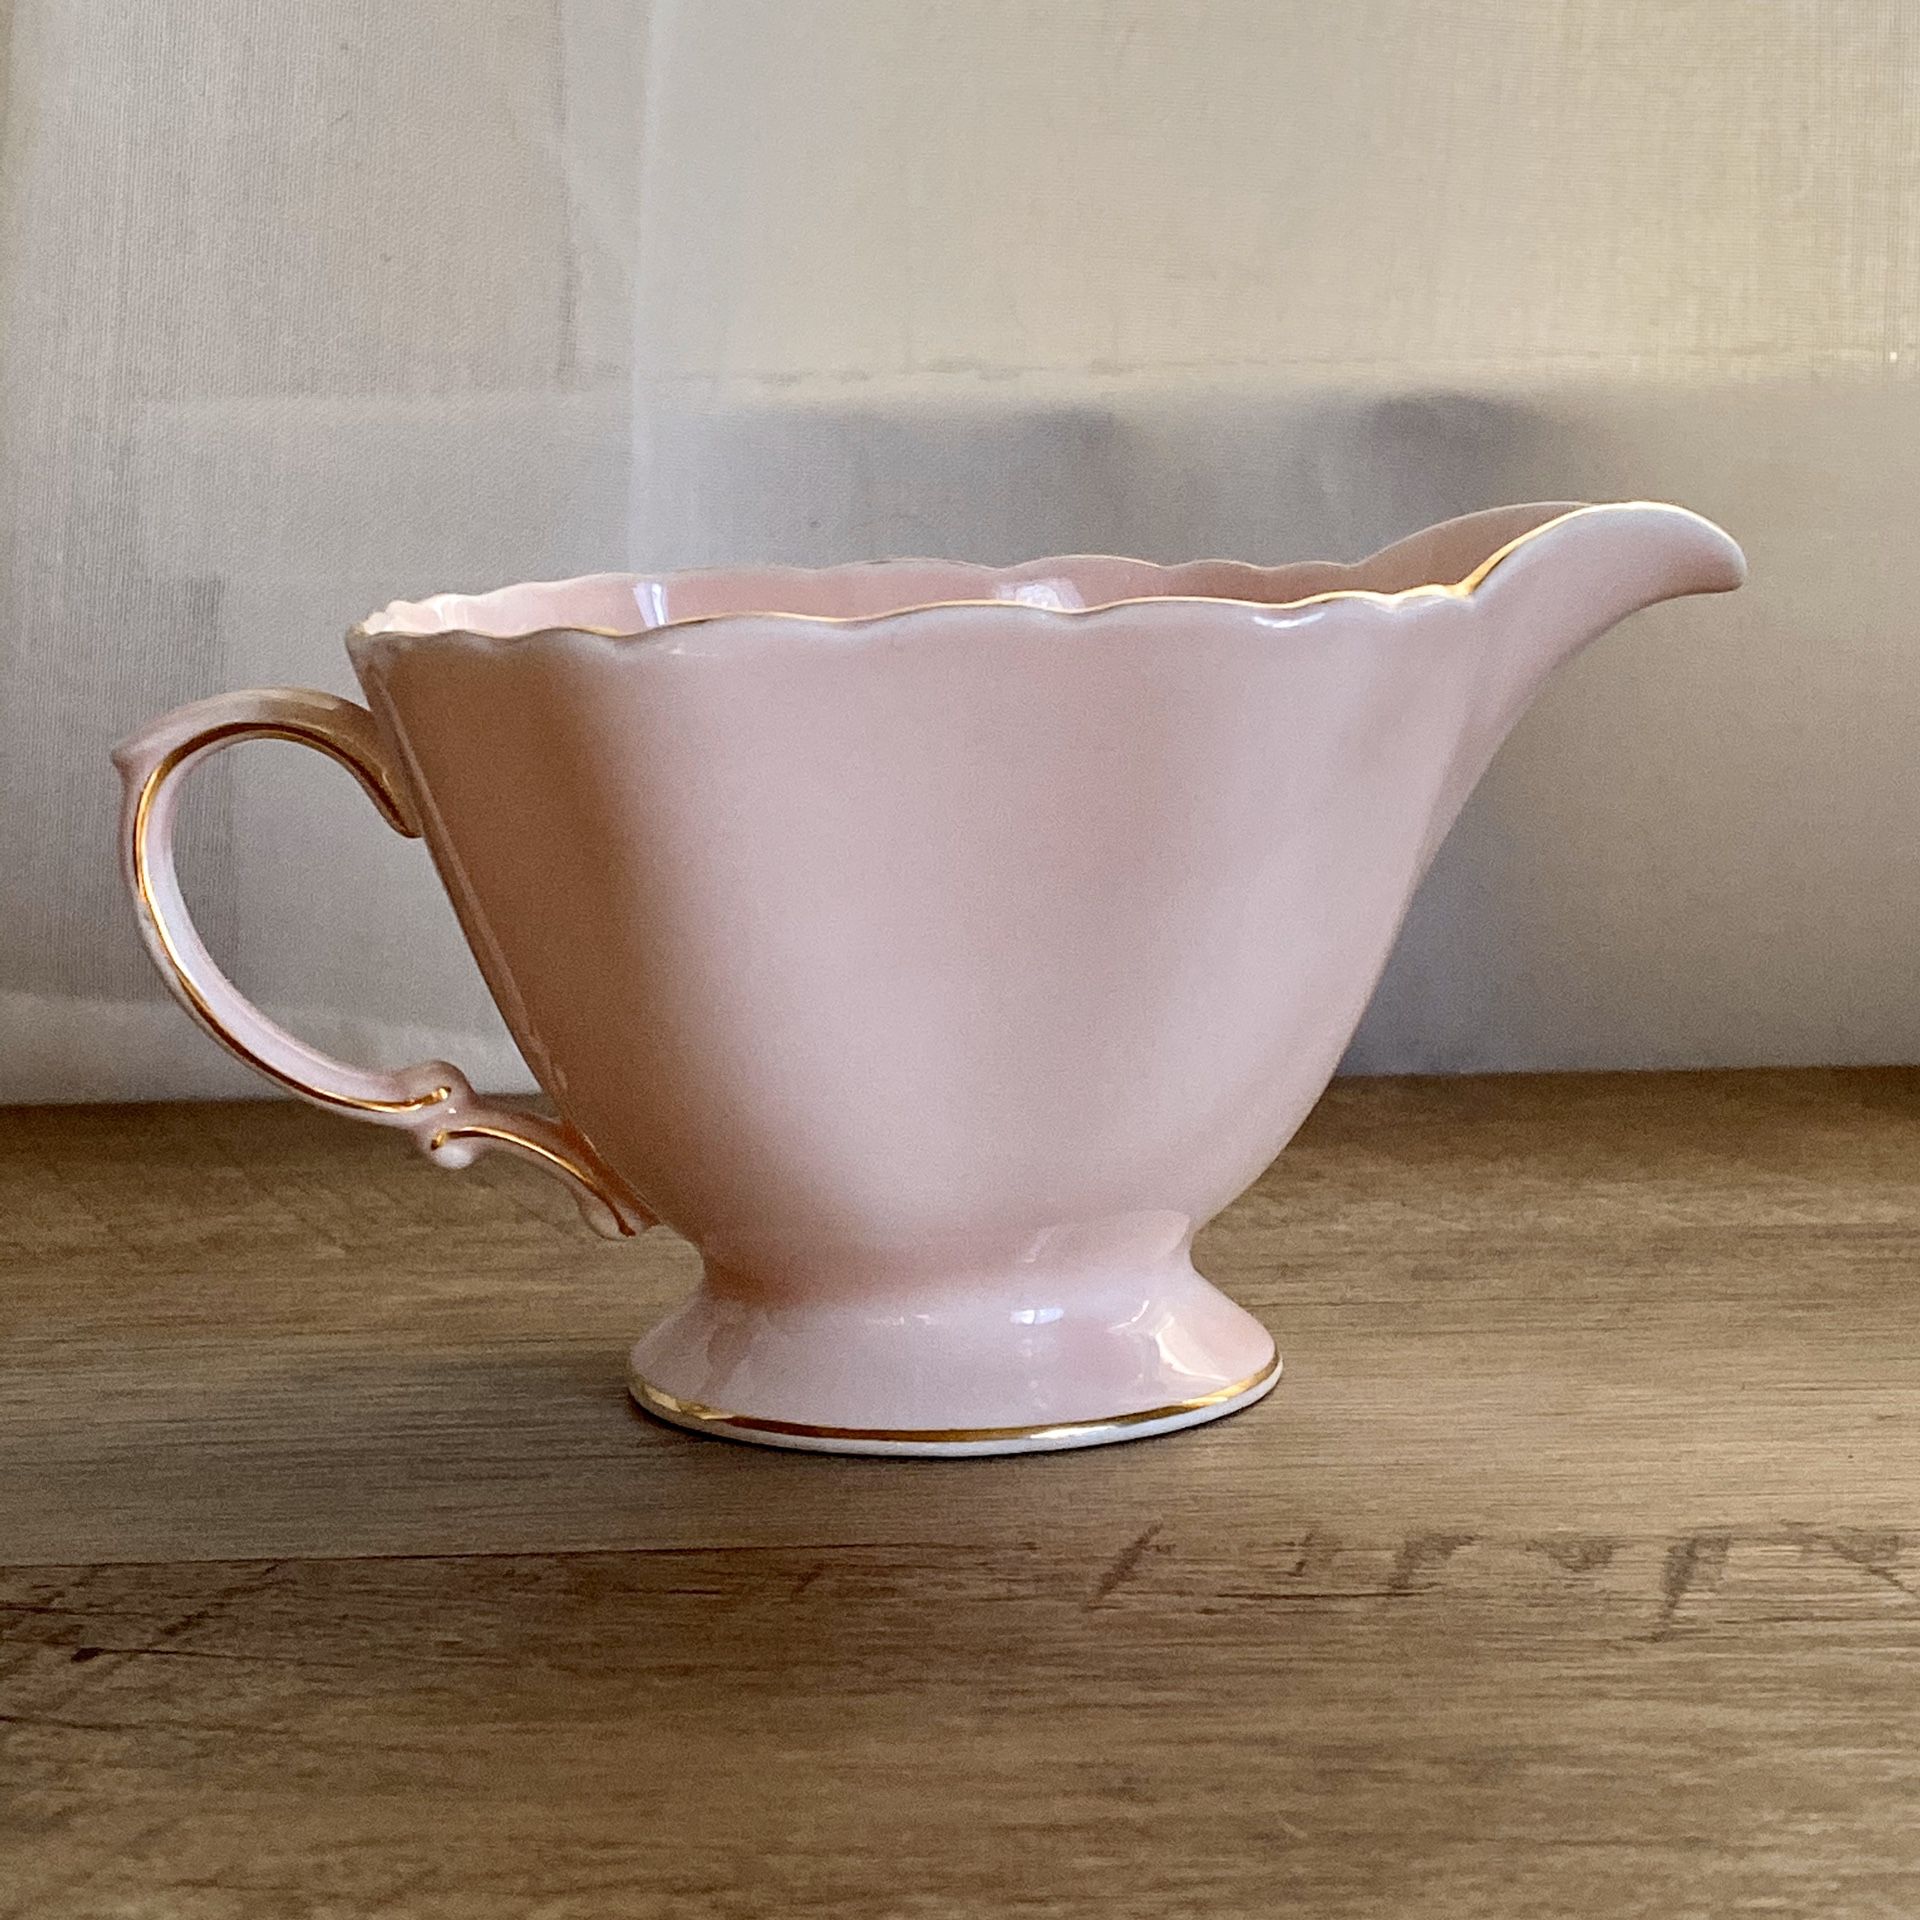 Antique vintage duchess creamer pink gold fine bone china